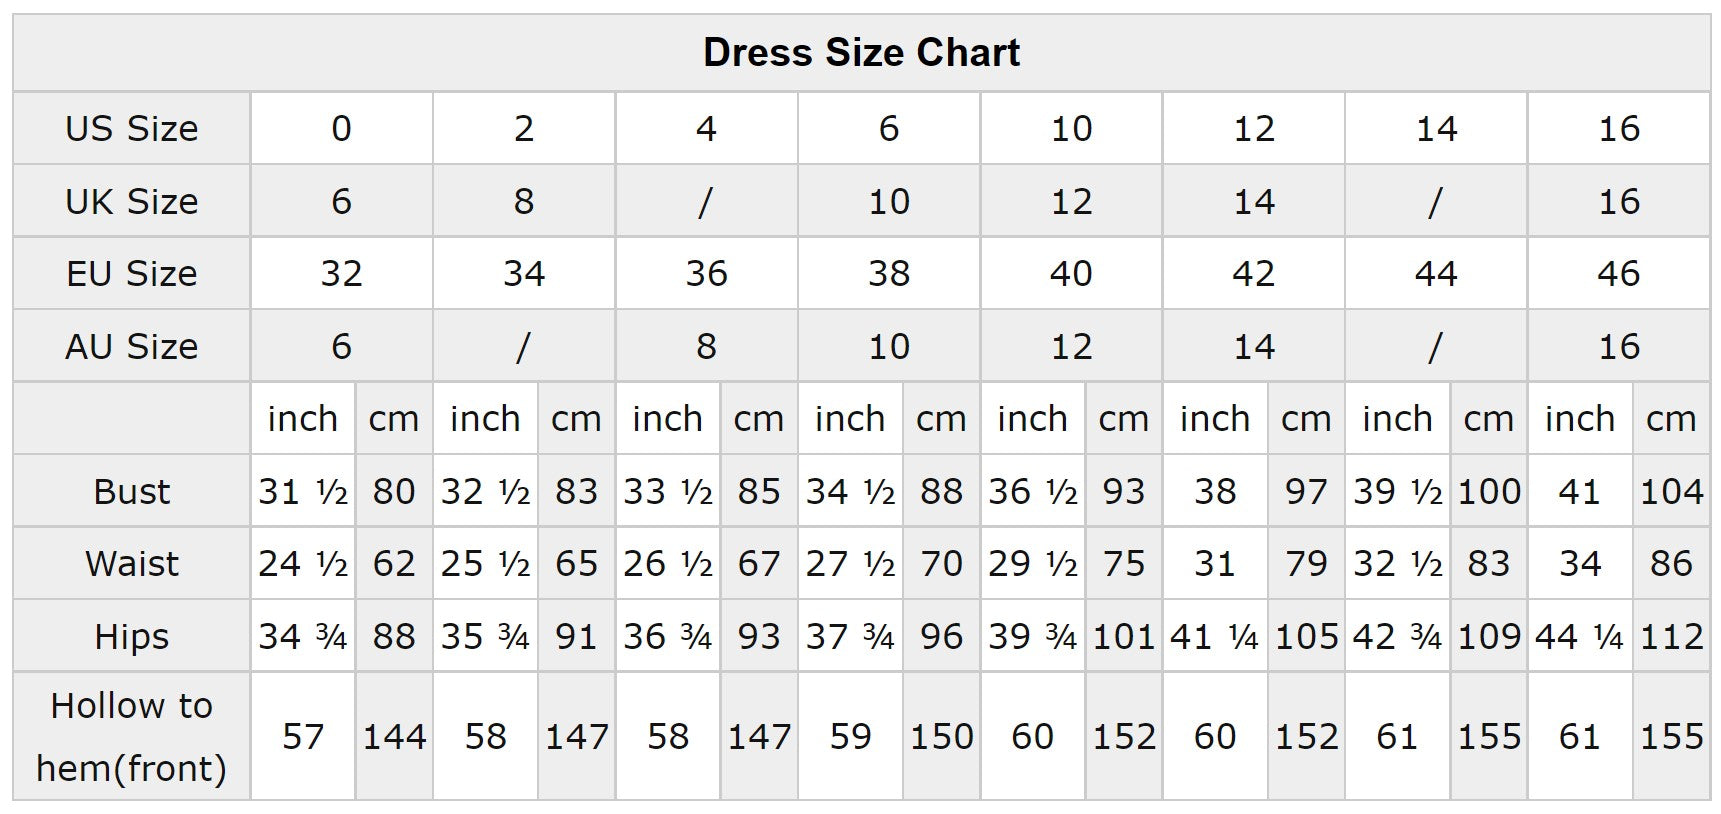 dress size chart us